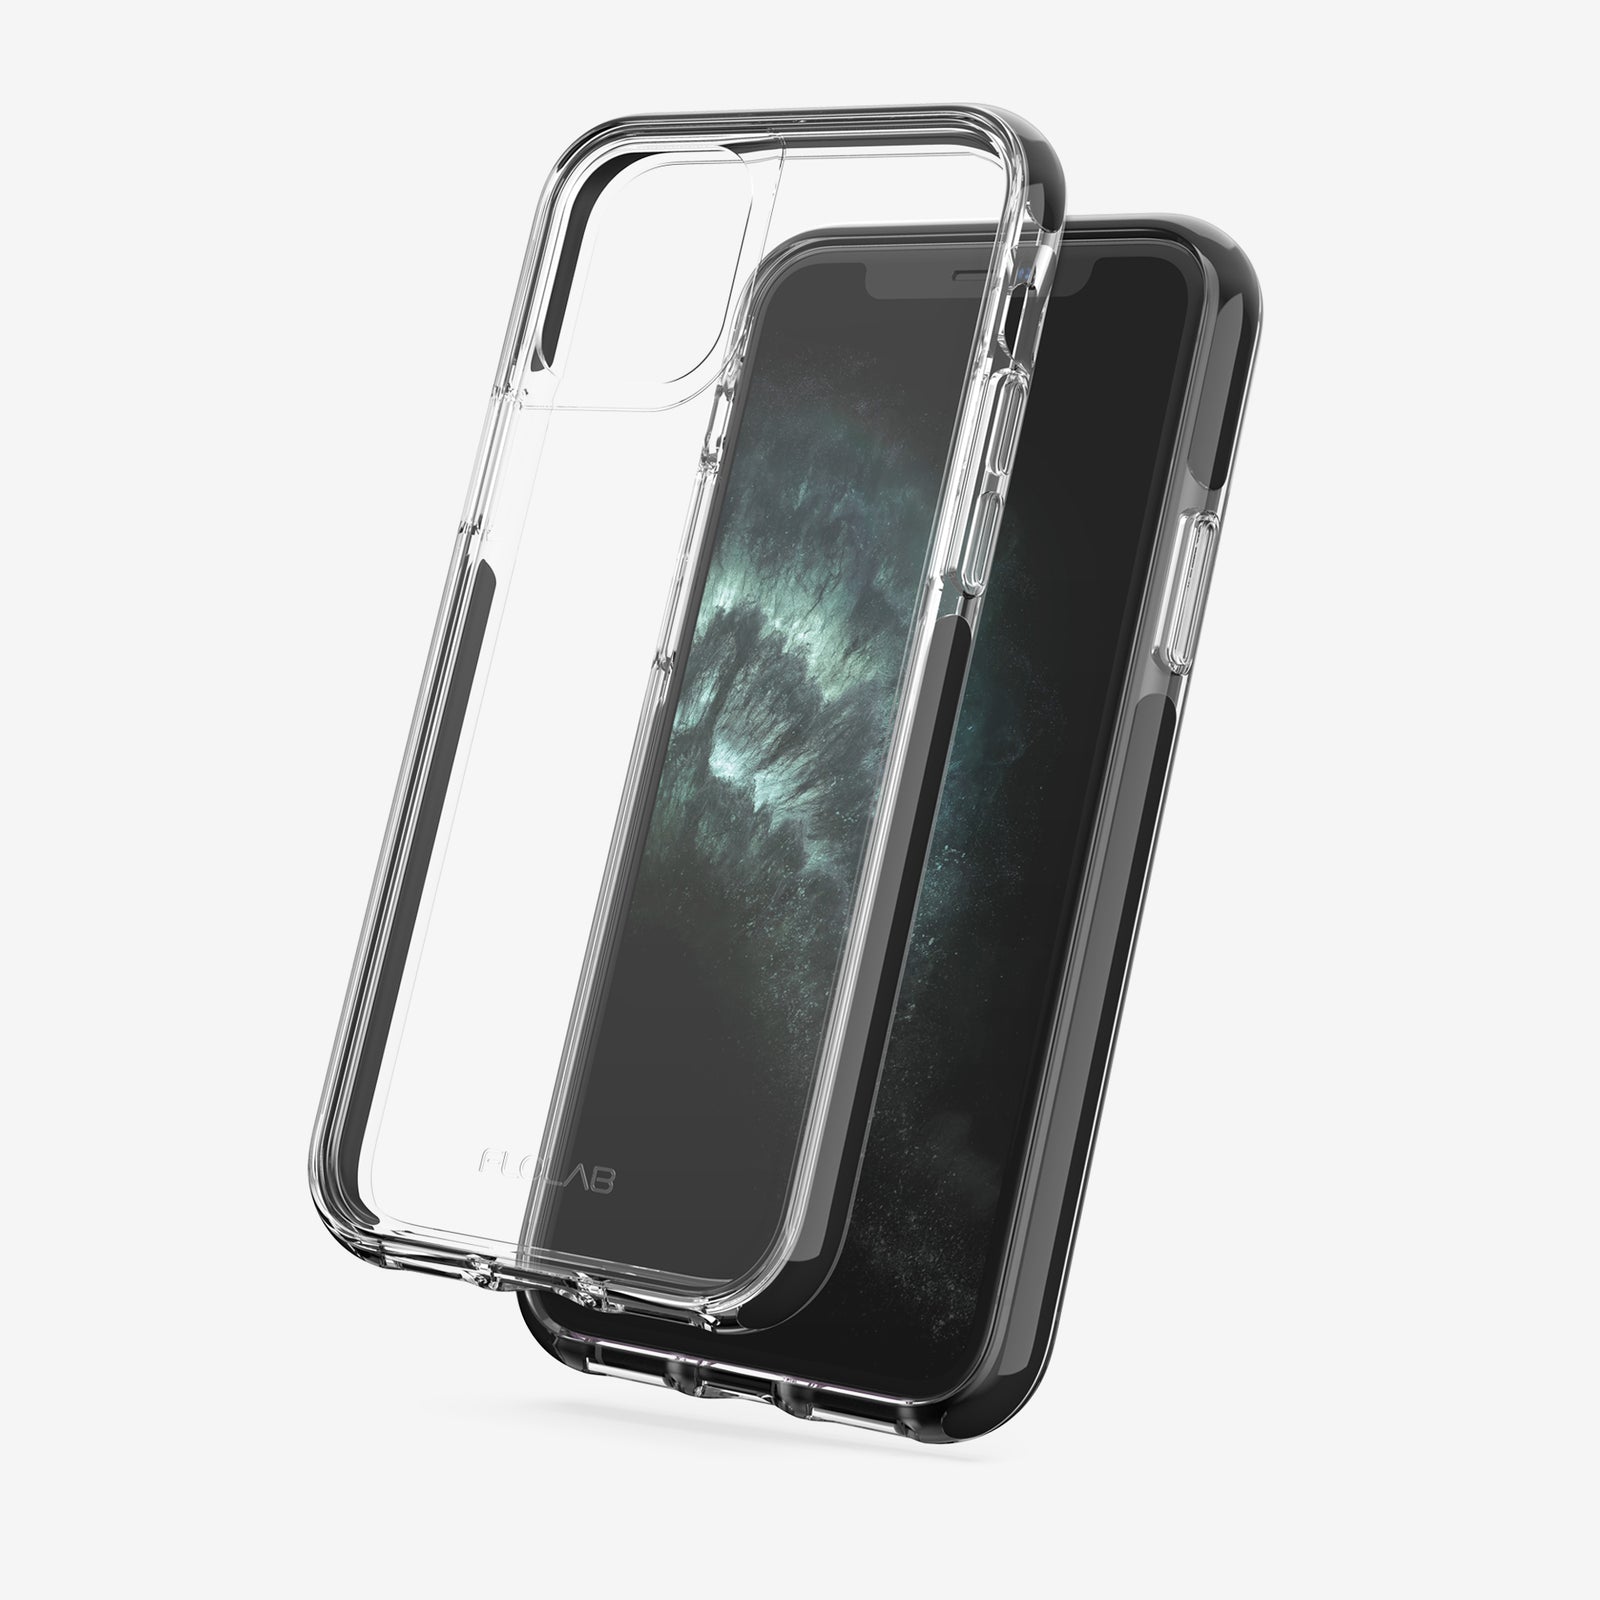 Best iPhone 11 Pro Max Cases